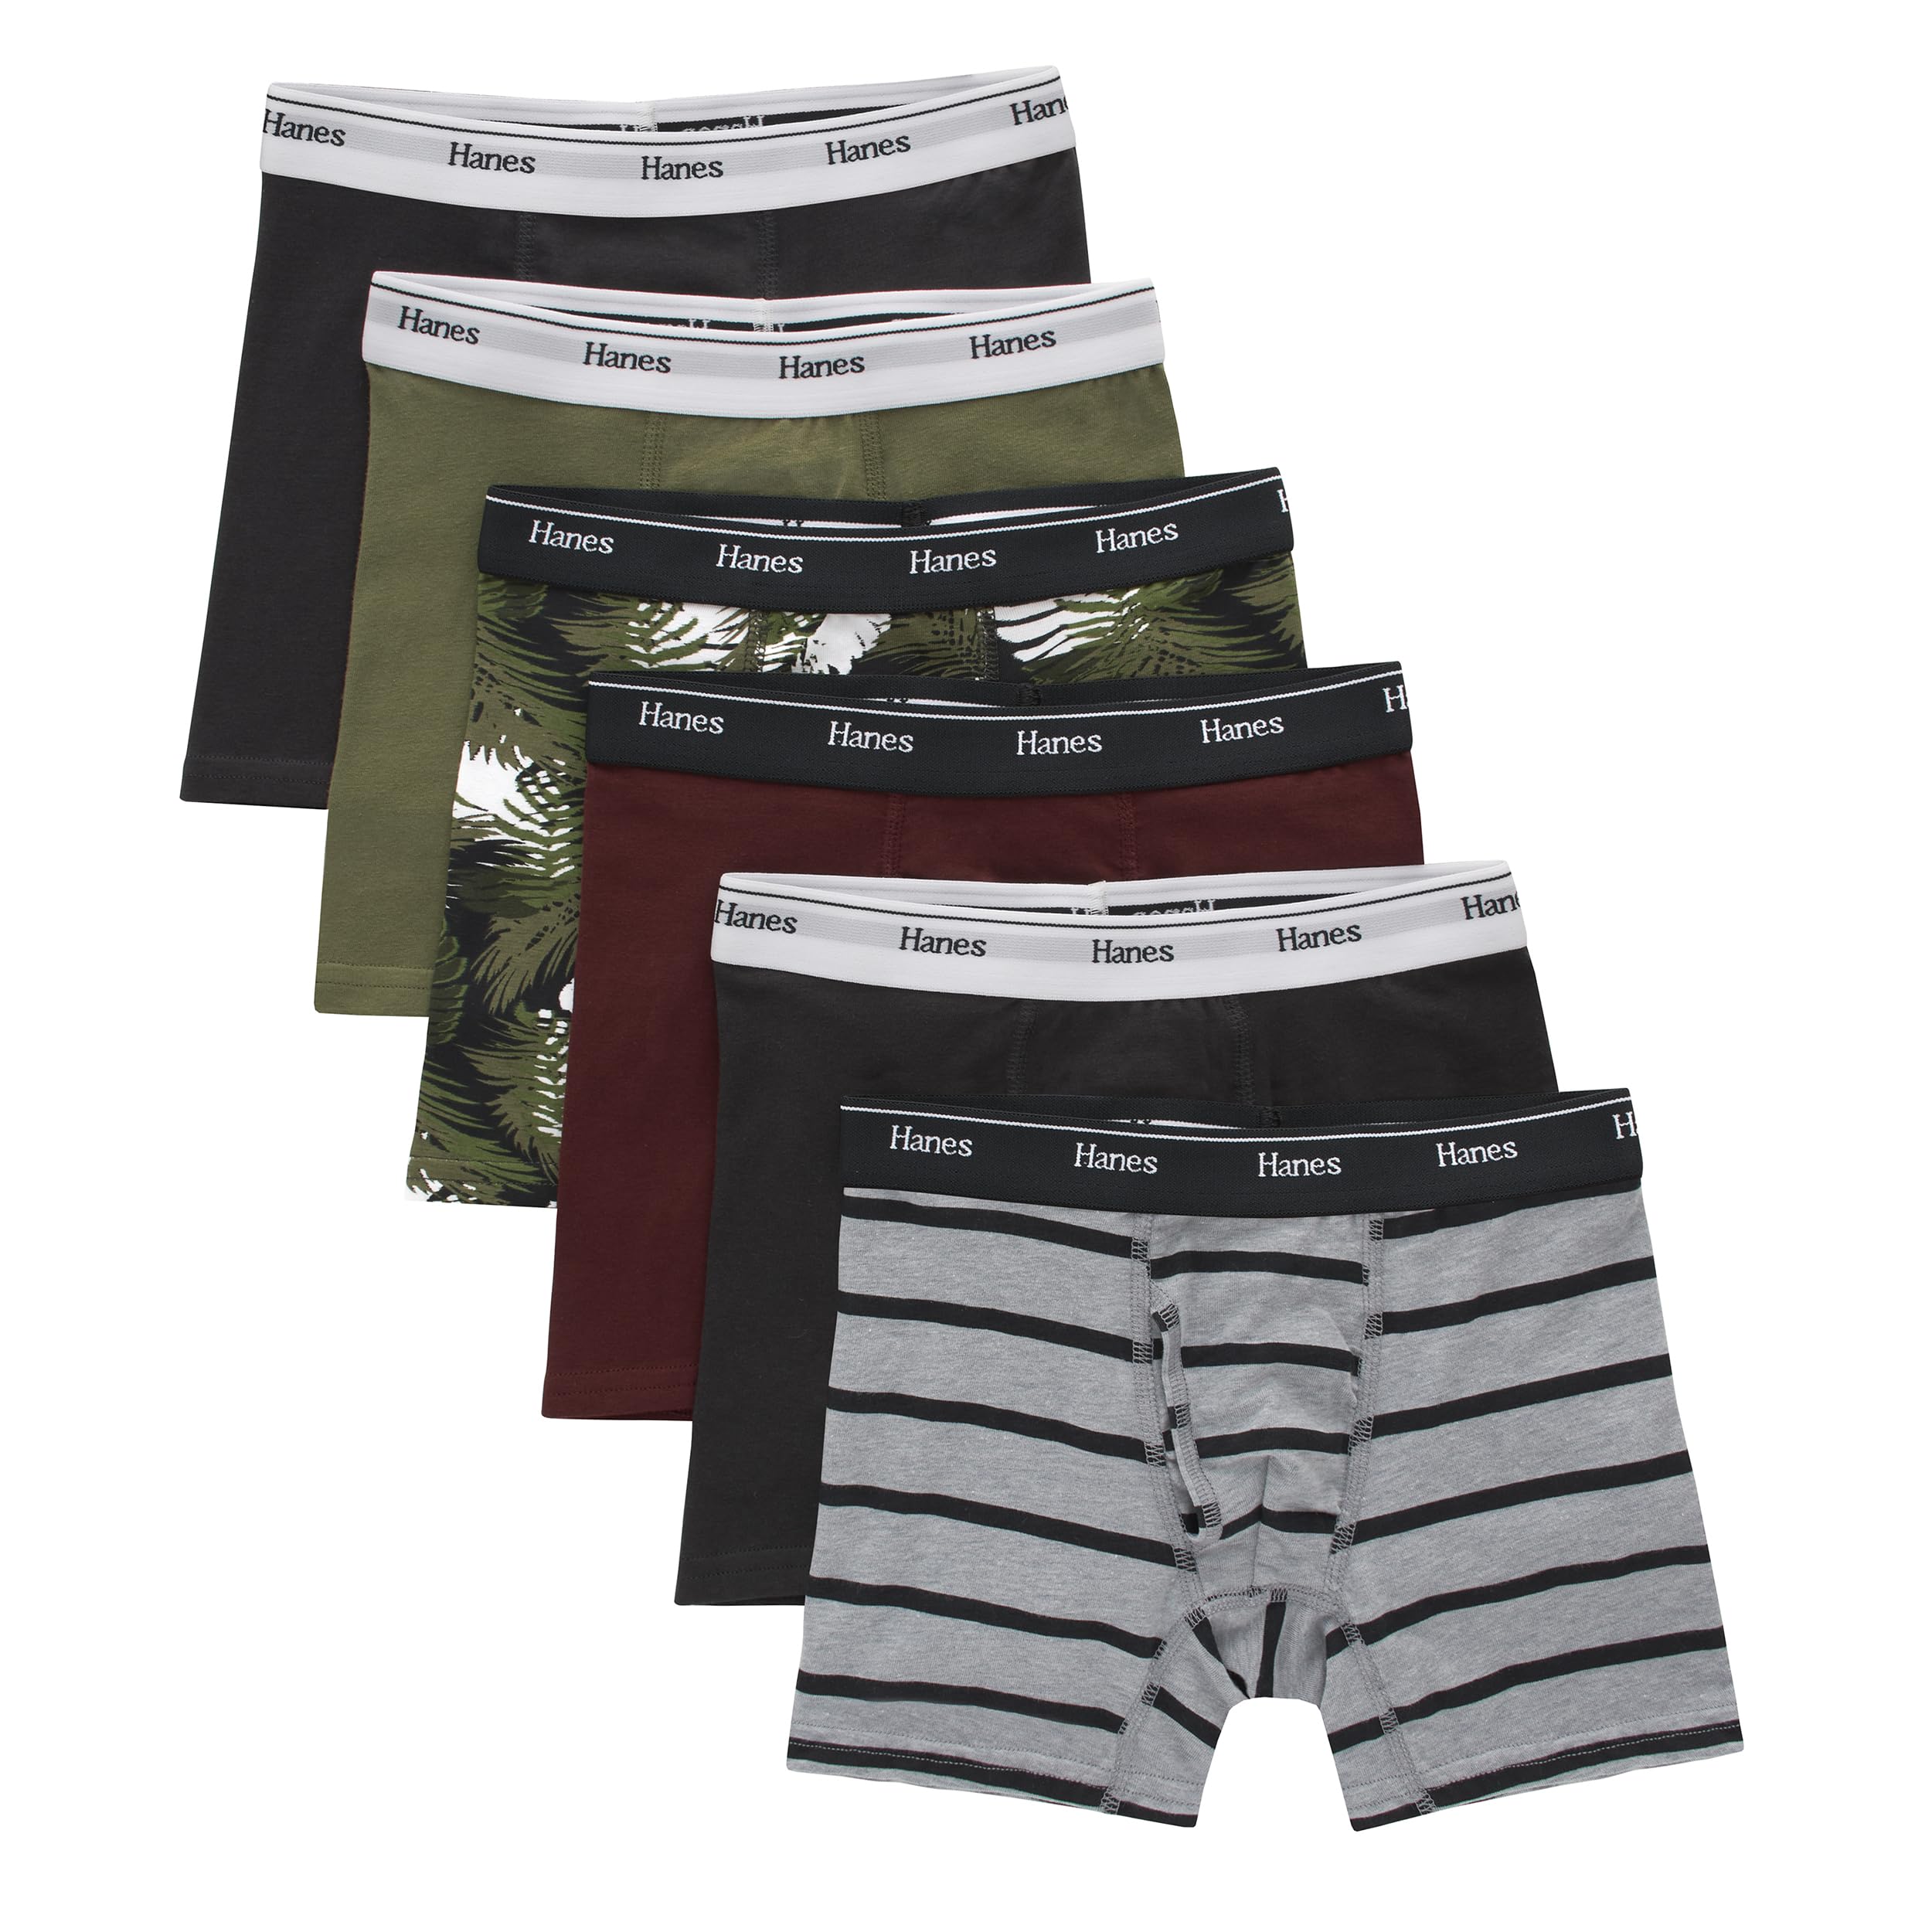 Hanes boys Originals Boxer Briefs, Tween Boy Underwear, Cotton Stretch, 6-pack